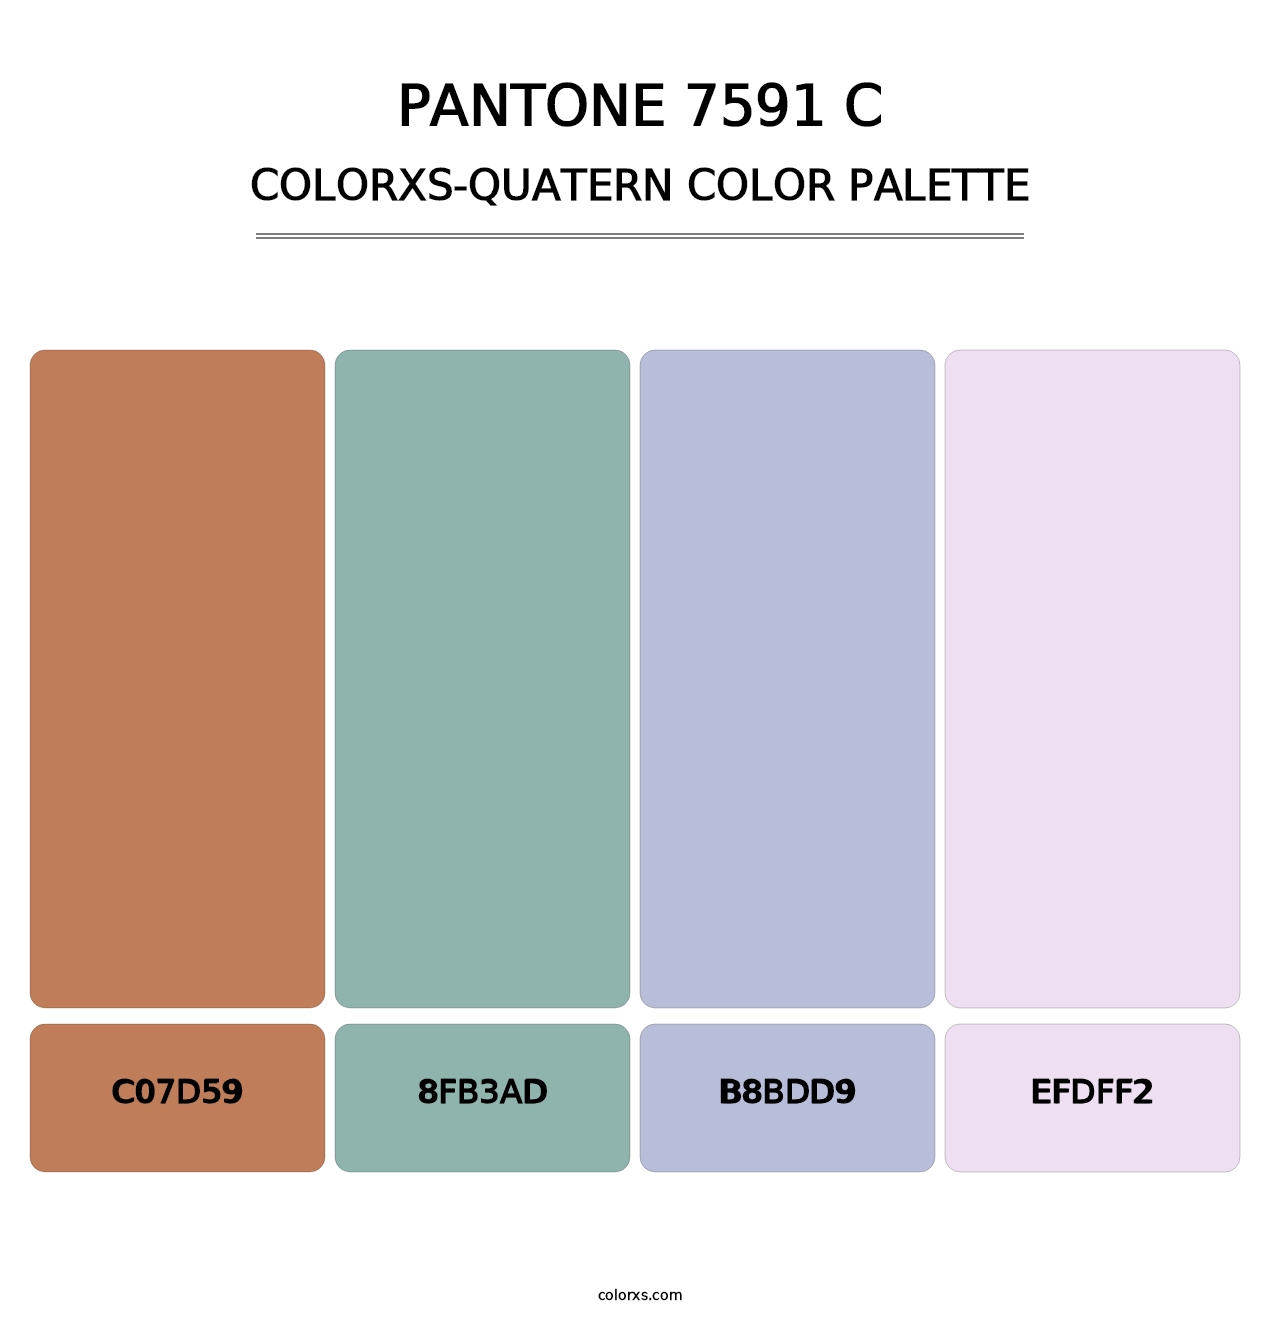 PANTONE 7591 C - Colorxs Quatern Palette